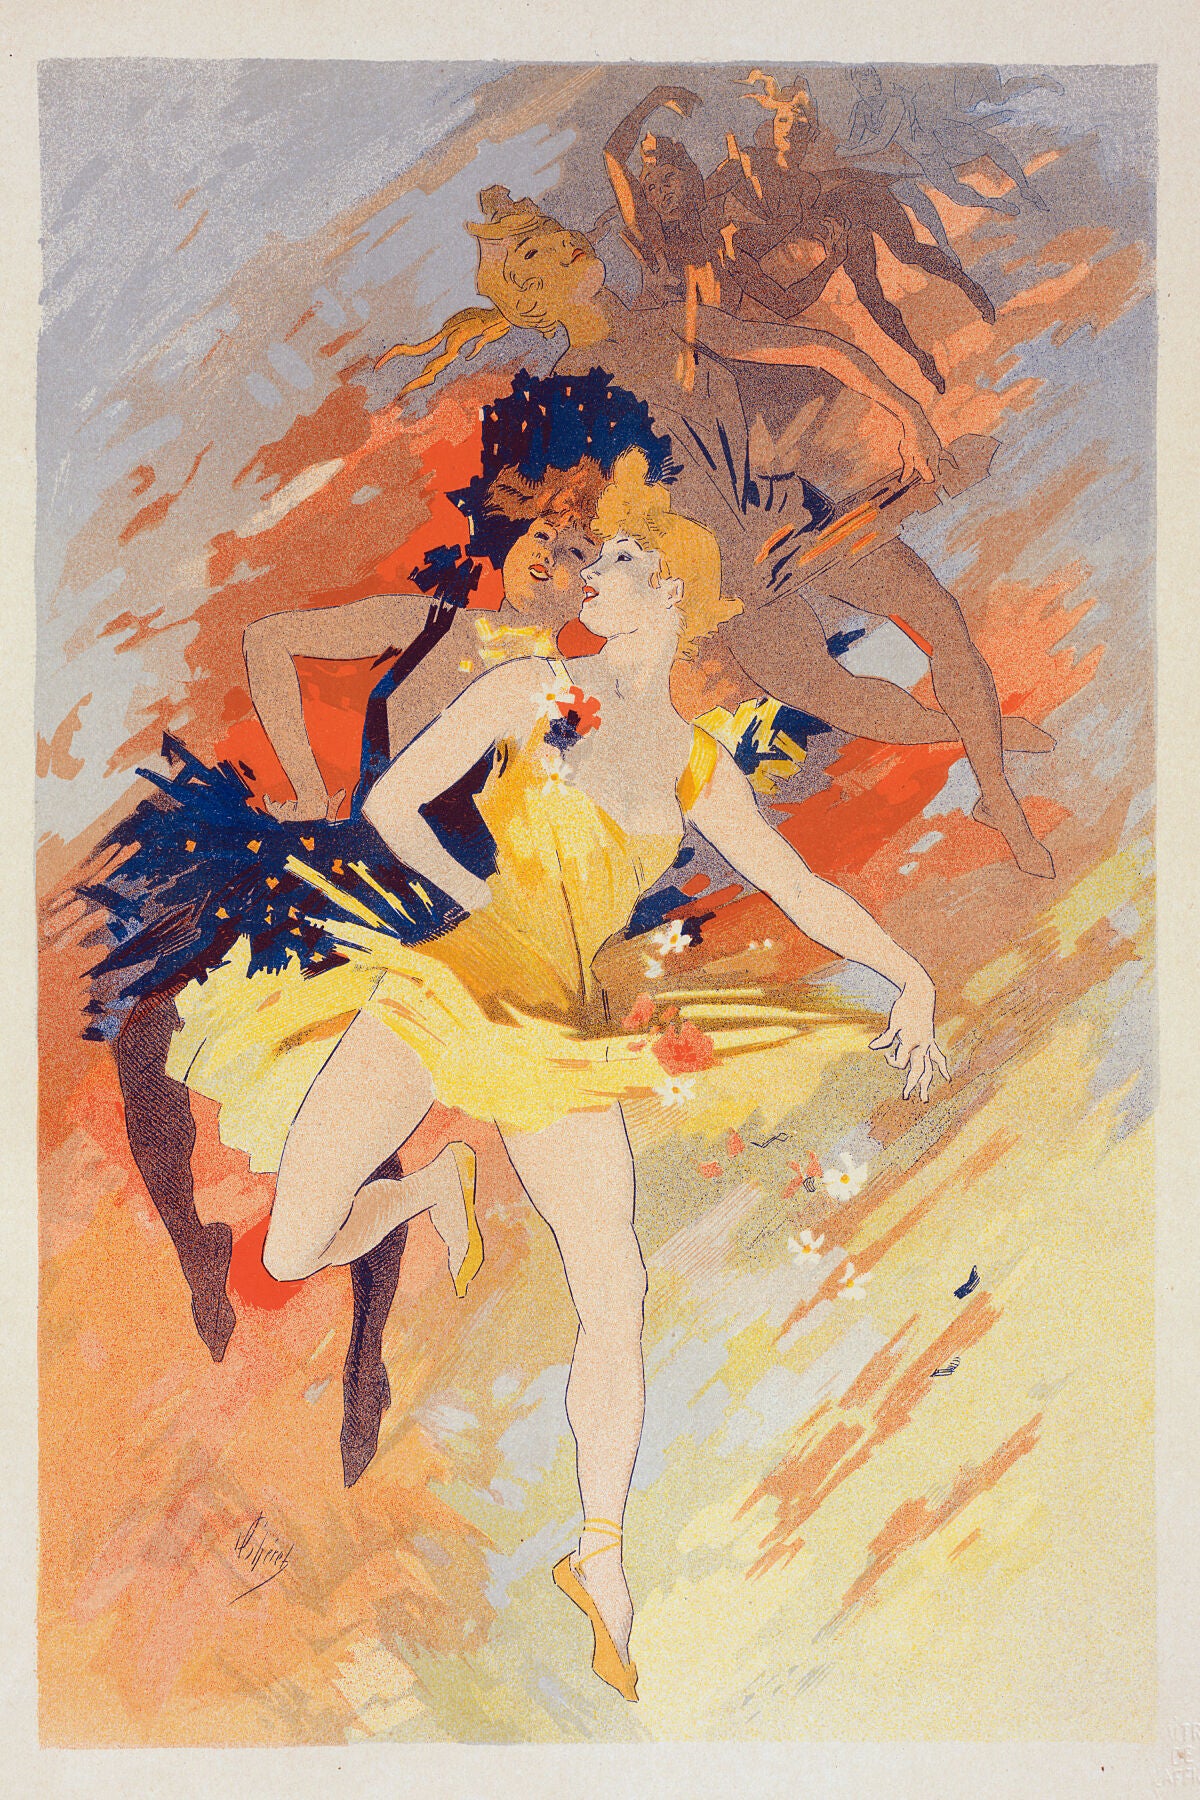 La Danse by Jules Chéret - c. 1836-1932